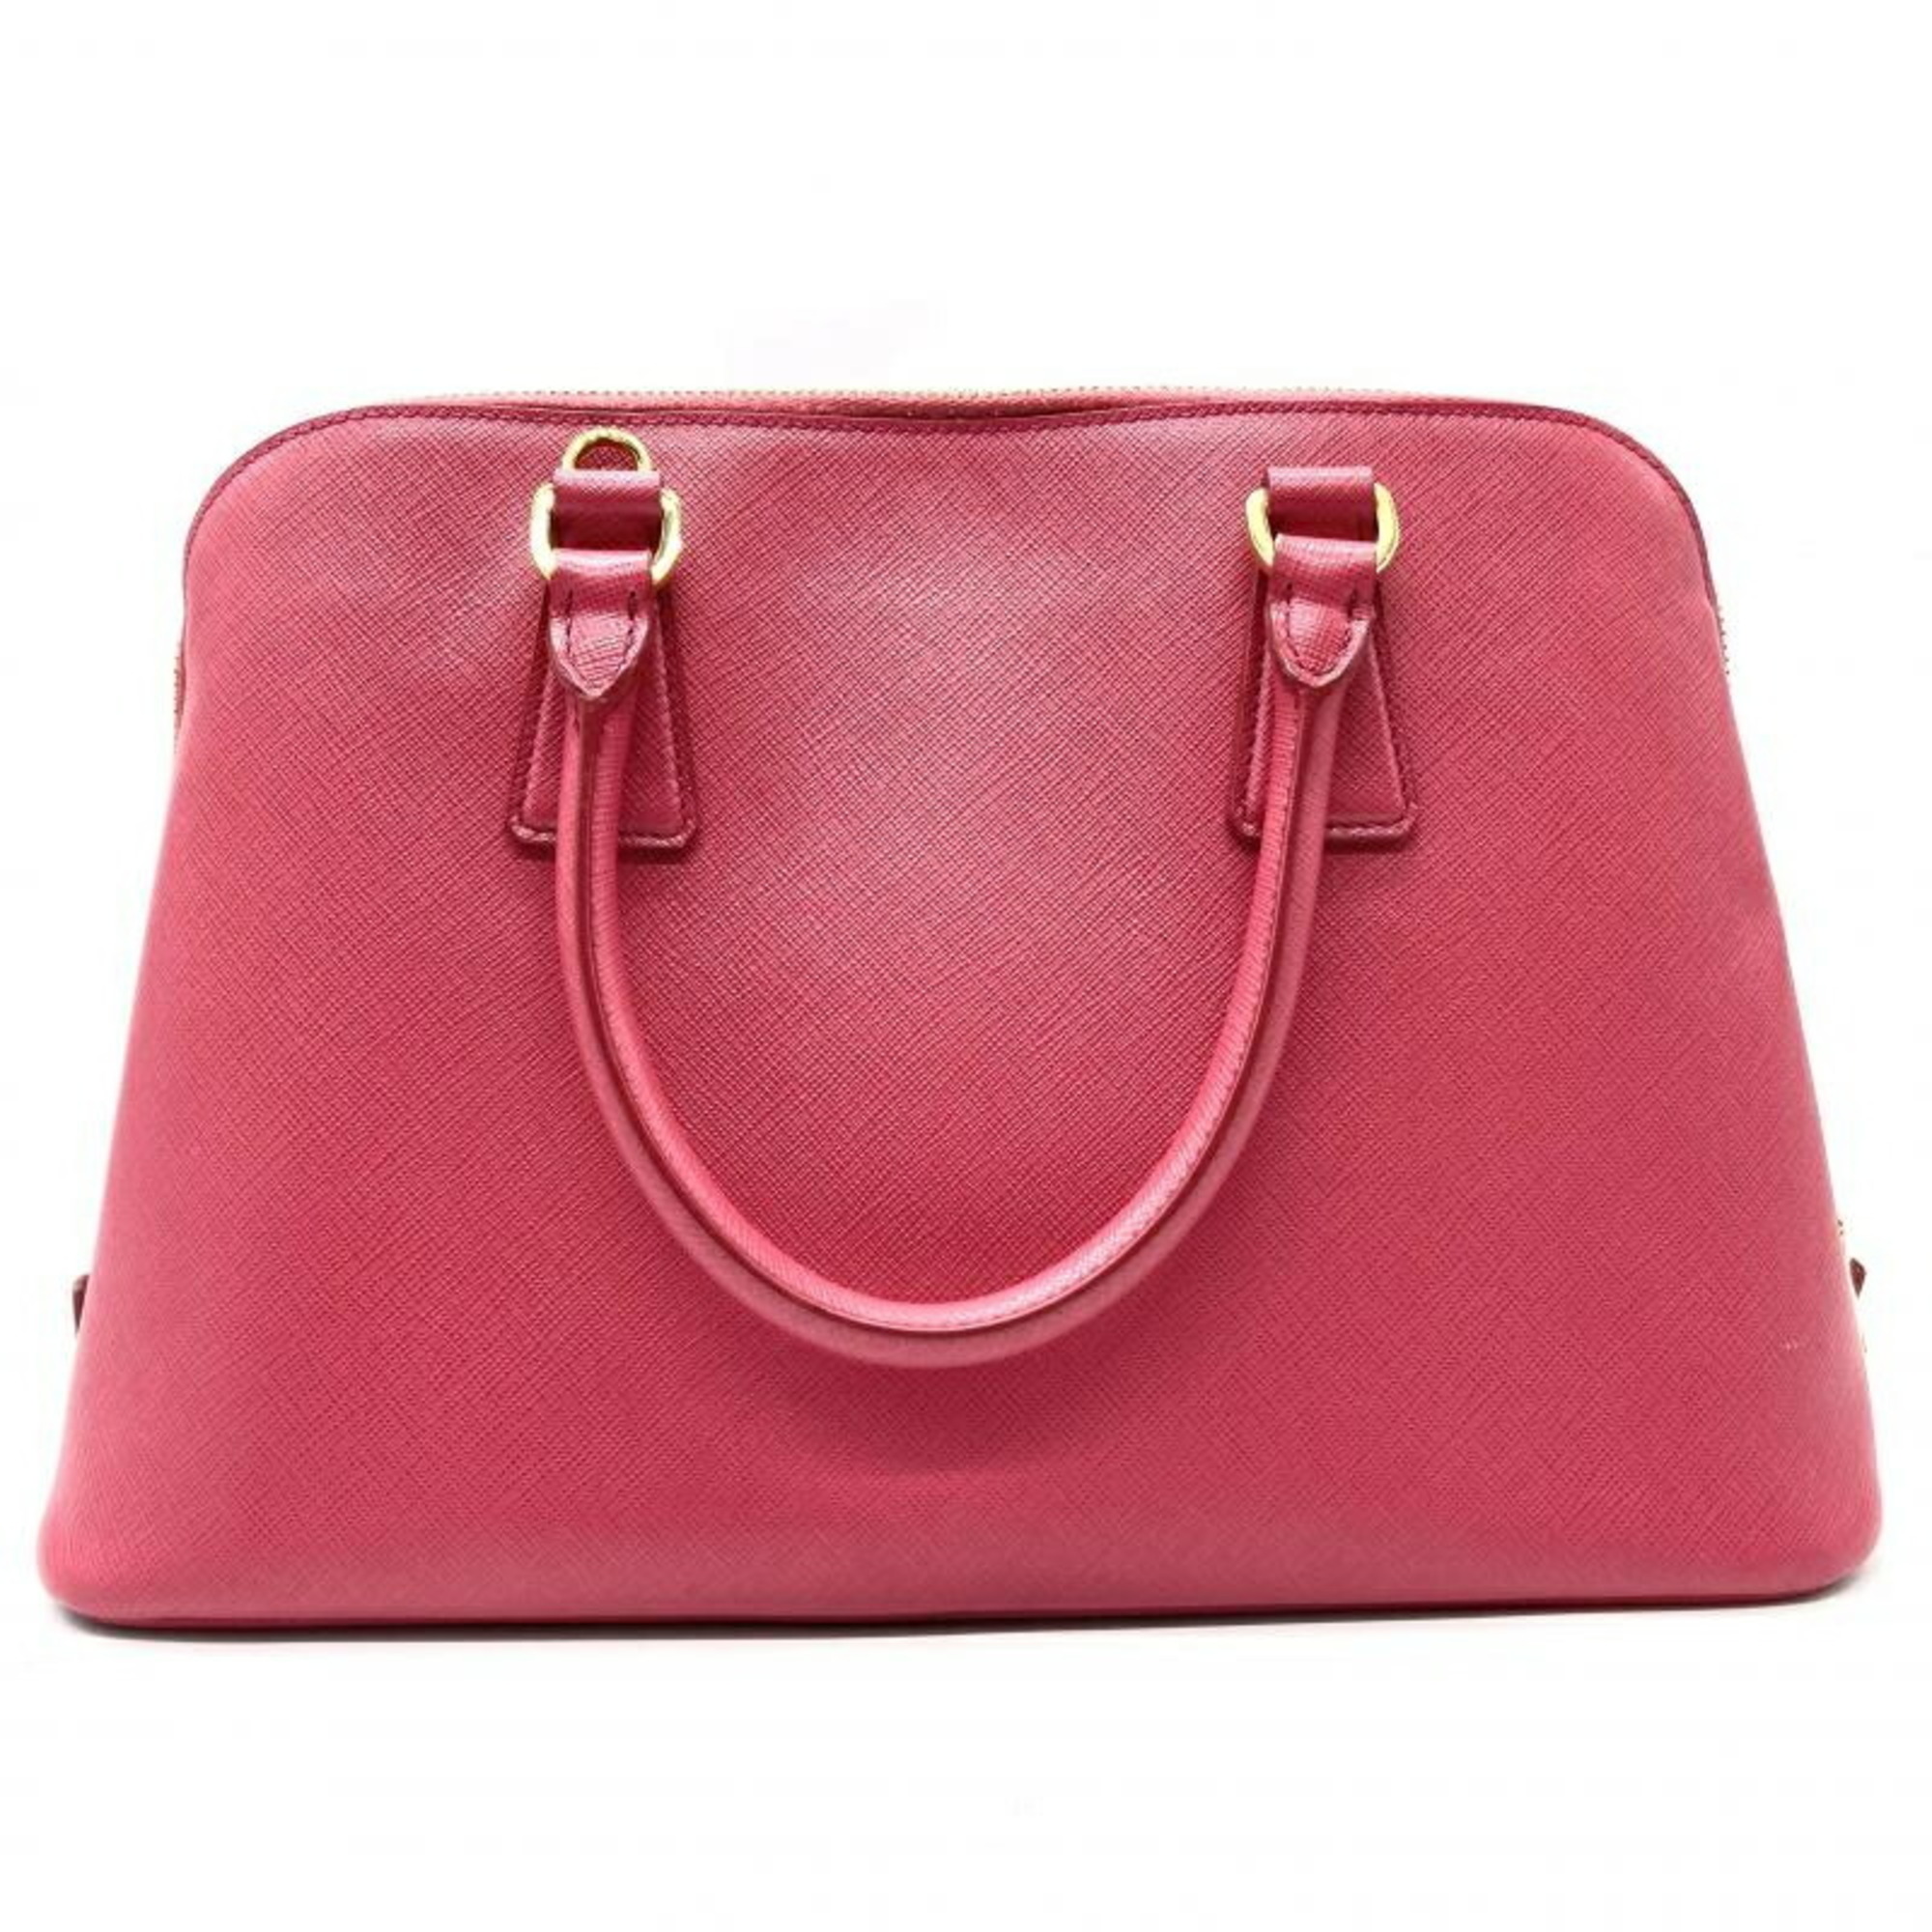 PRADA Saffiano Lux handbag BL0837 Prada pink SAFFIANO LUX